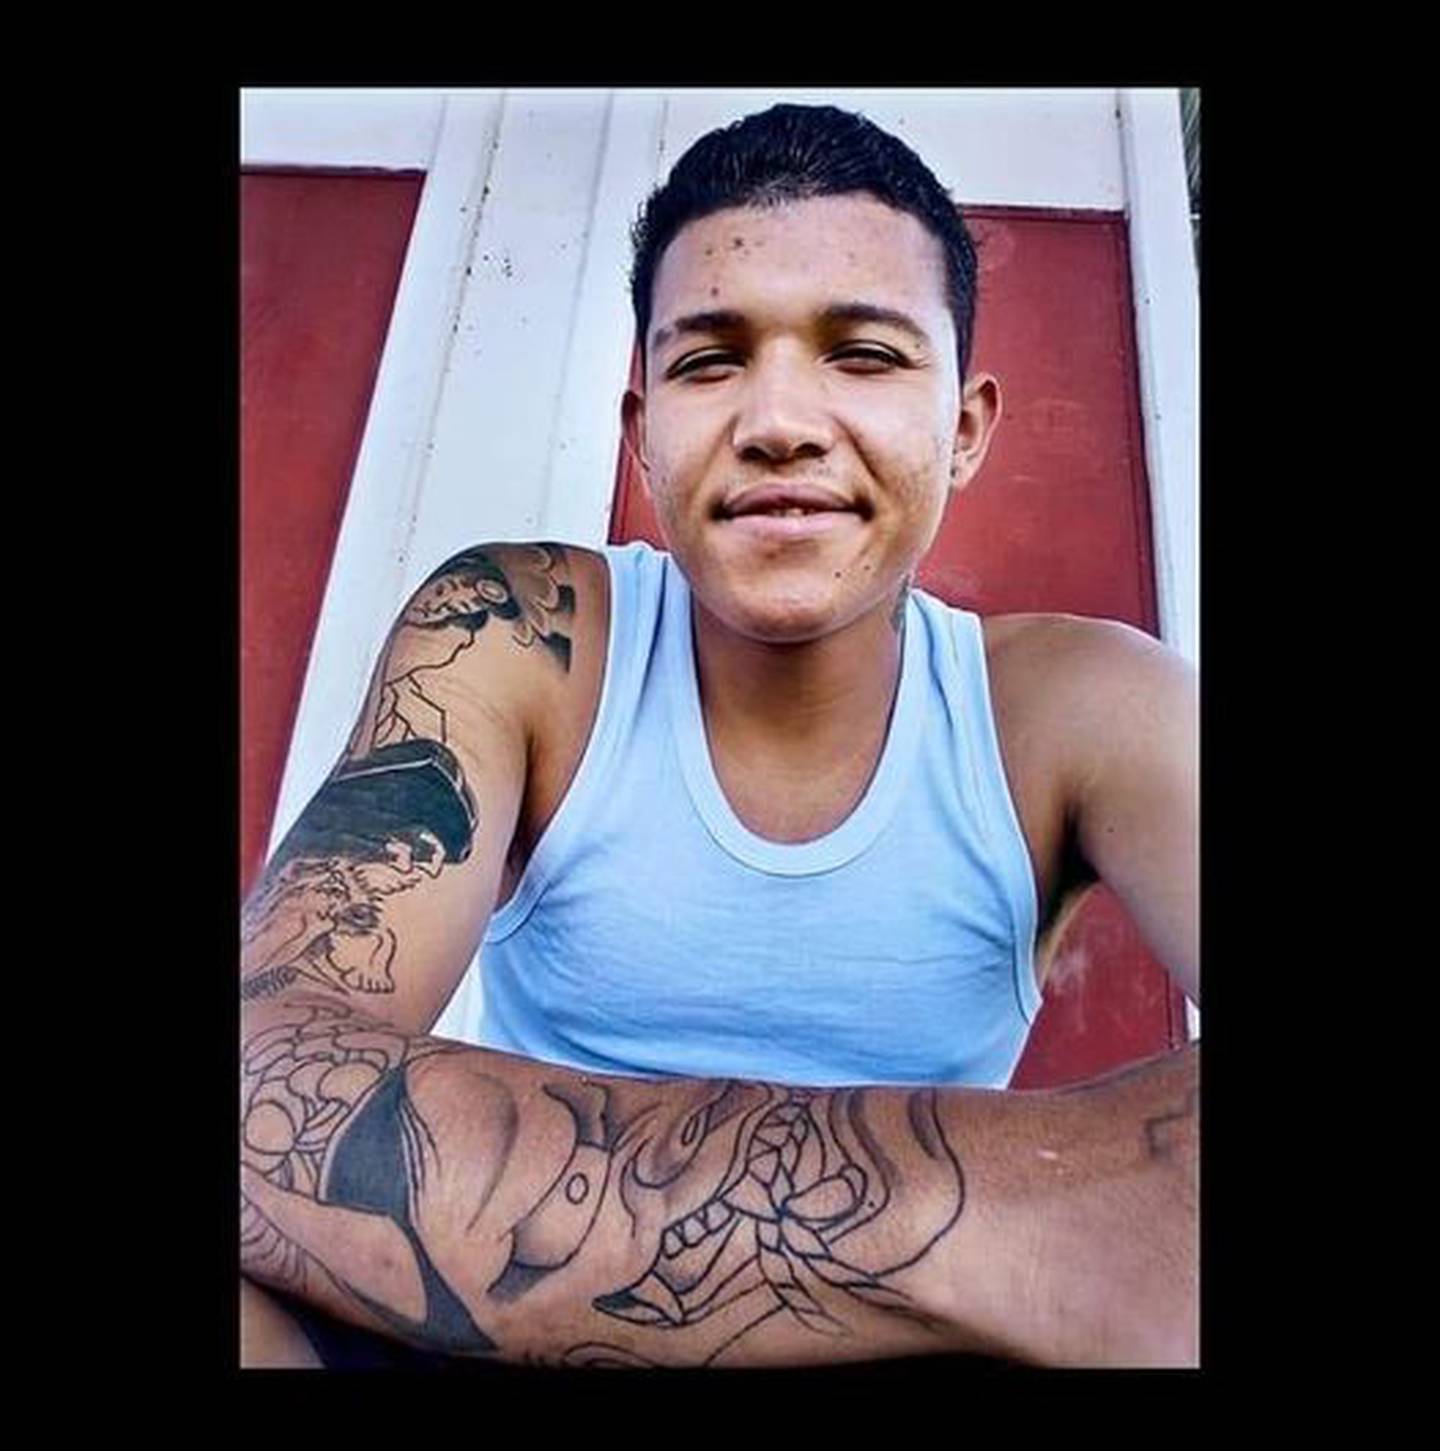 Lawrence Deliyore Vega, joven desaparecido desde el pasado martes. Foto cortesía Rebeca Vega.